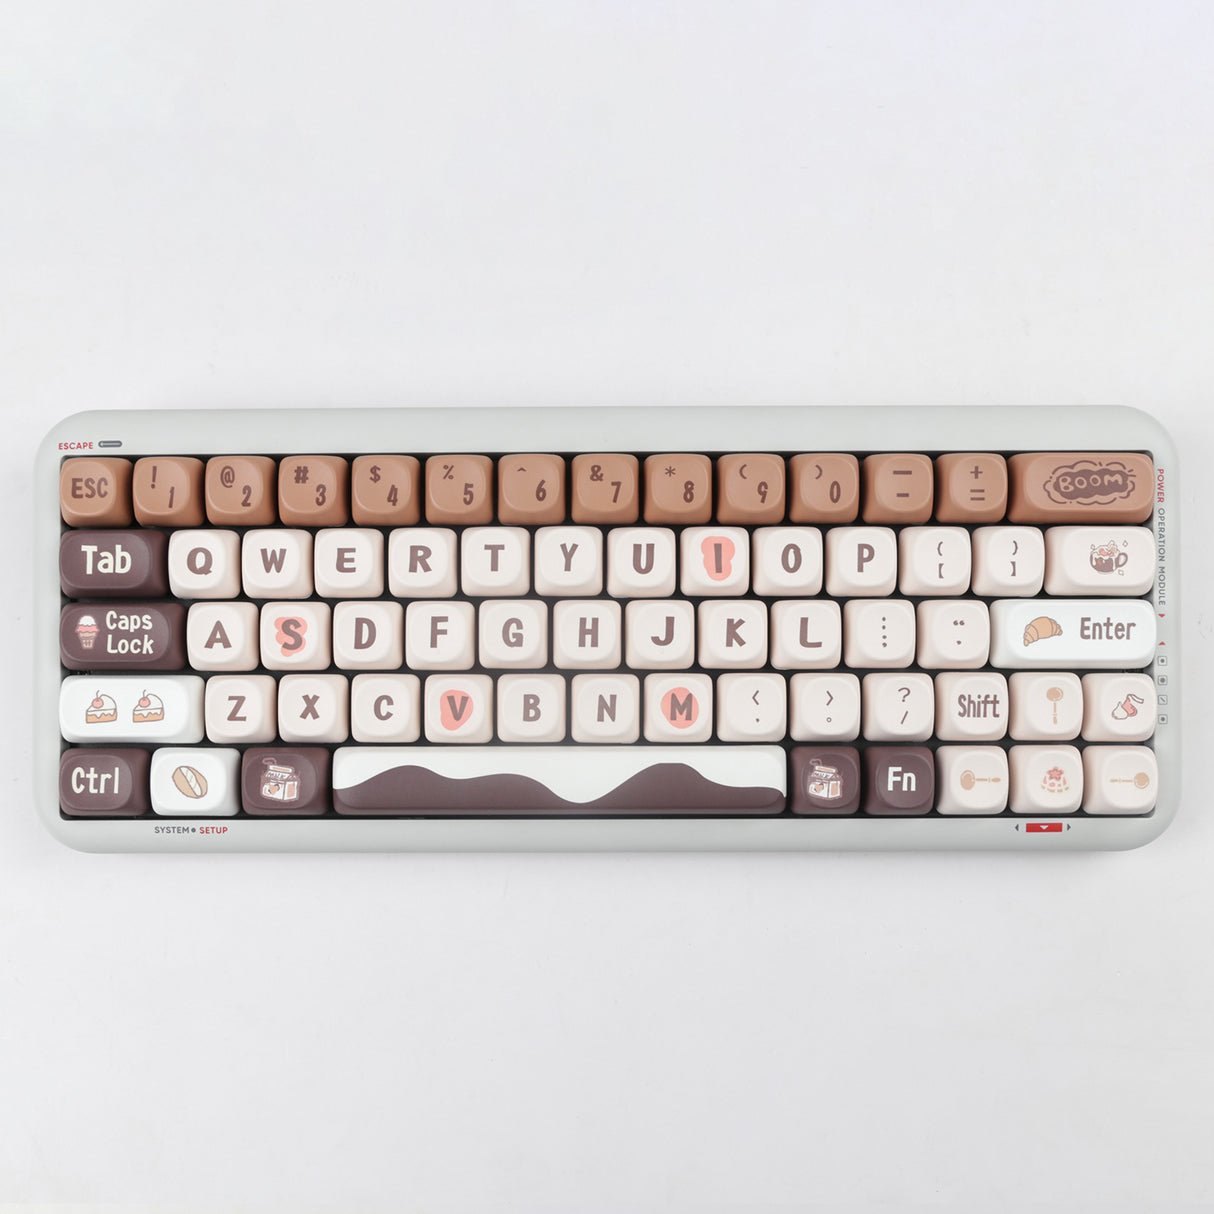 YUNZII Chocolate Keycap Set